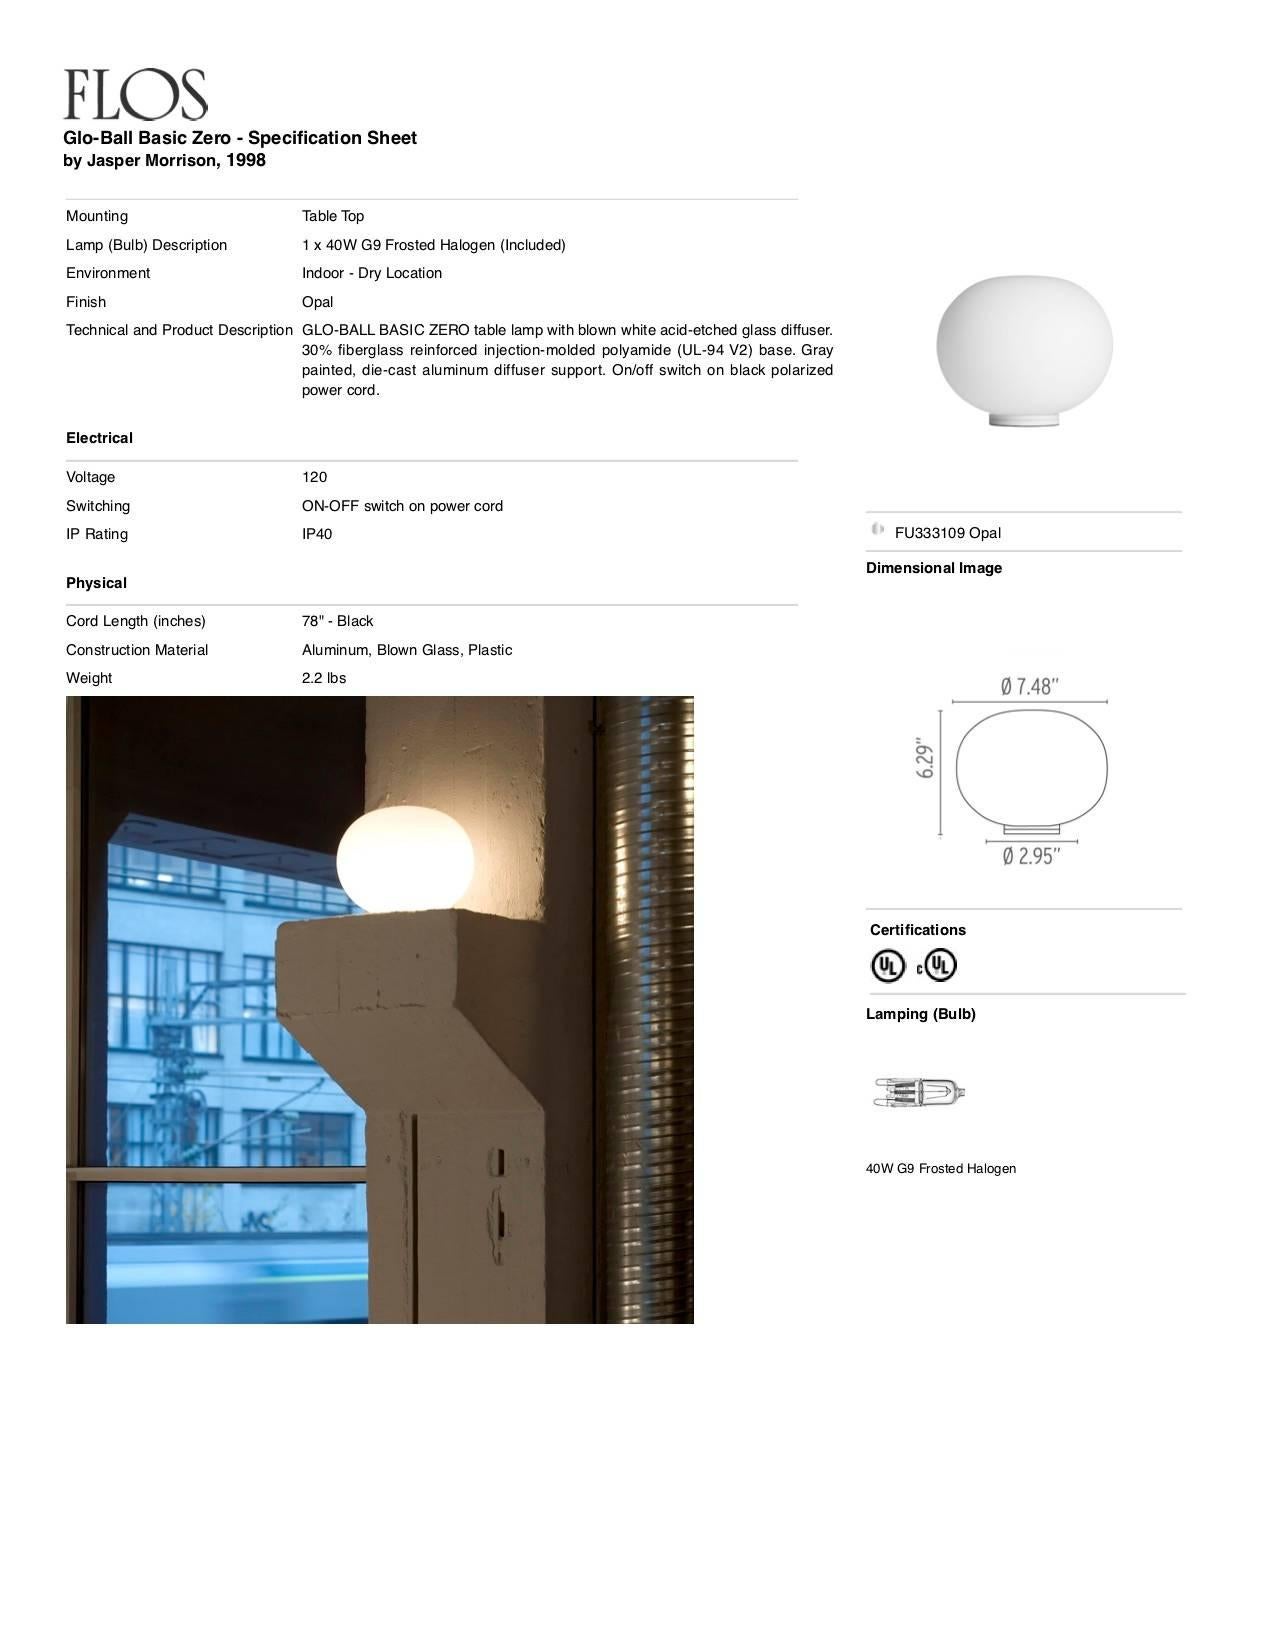 Jasper Morrison Moderne minimalistische Glo-Ball-Glas-Schreibtischlampe für FLOS, auf Lager (Aluminium) im Angebot